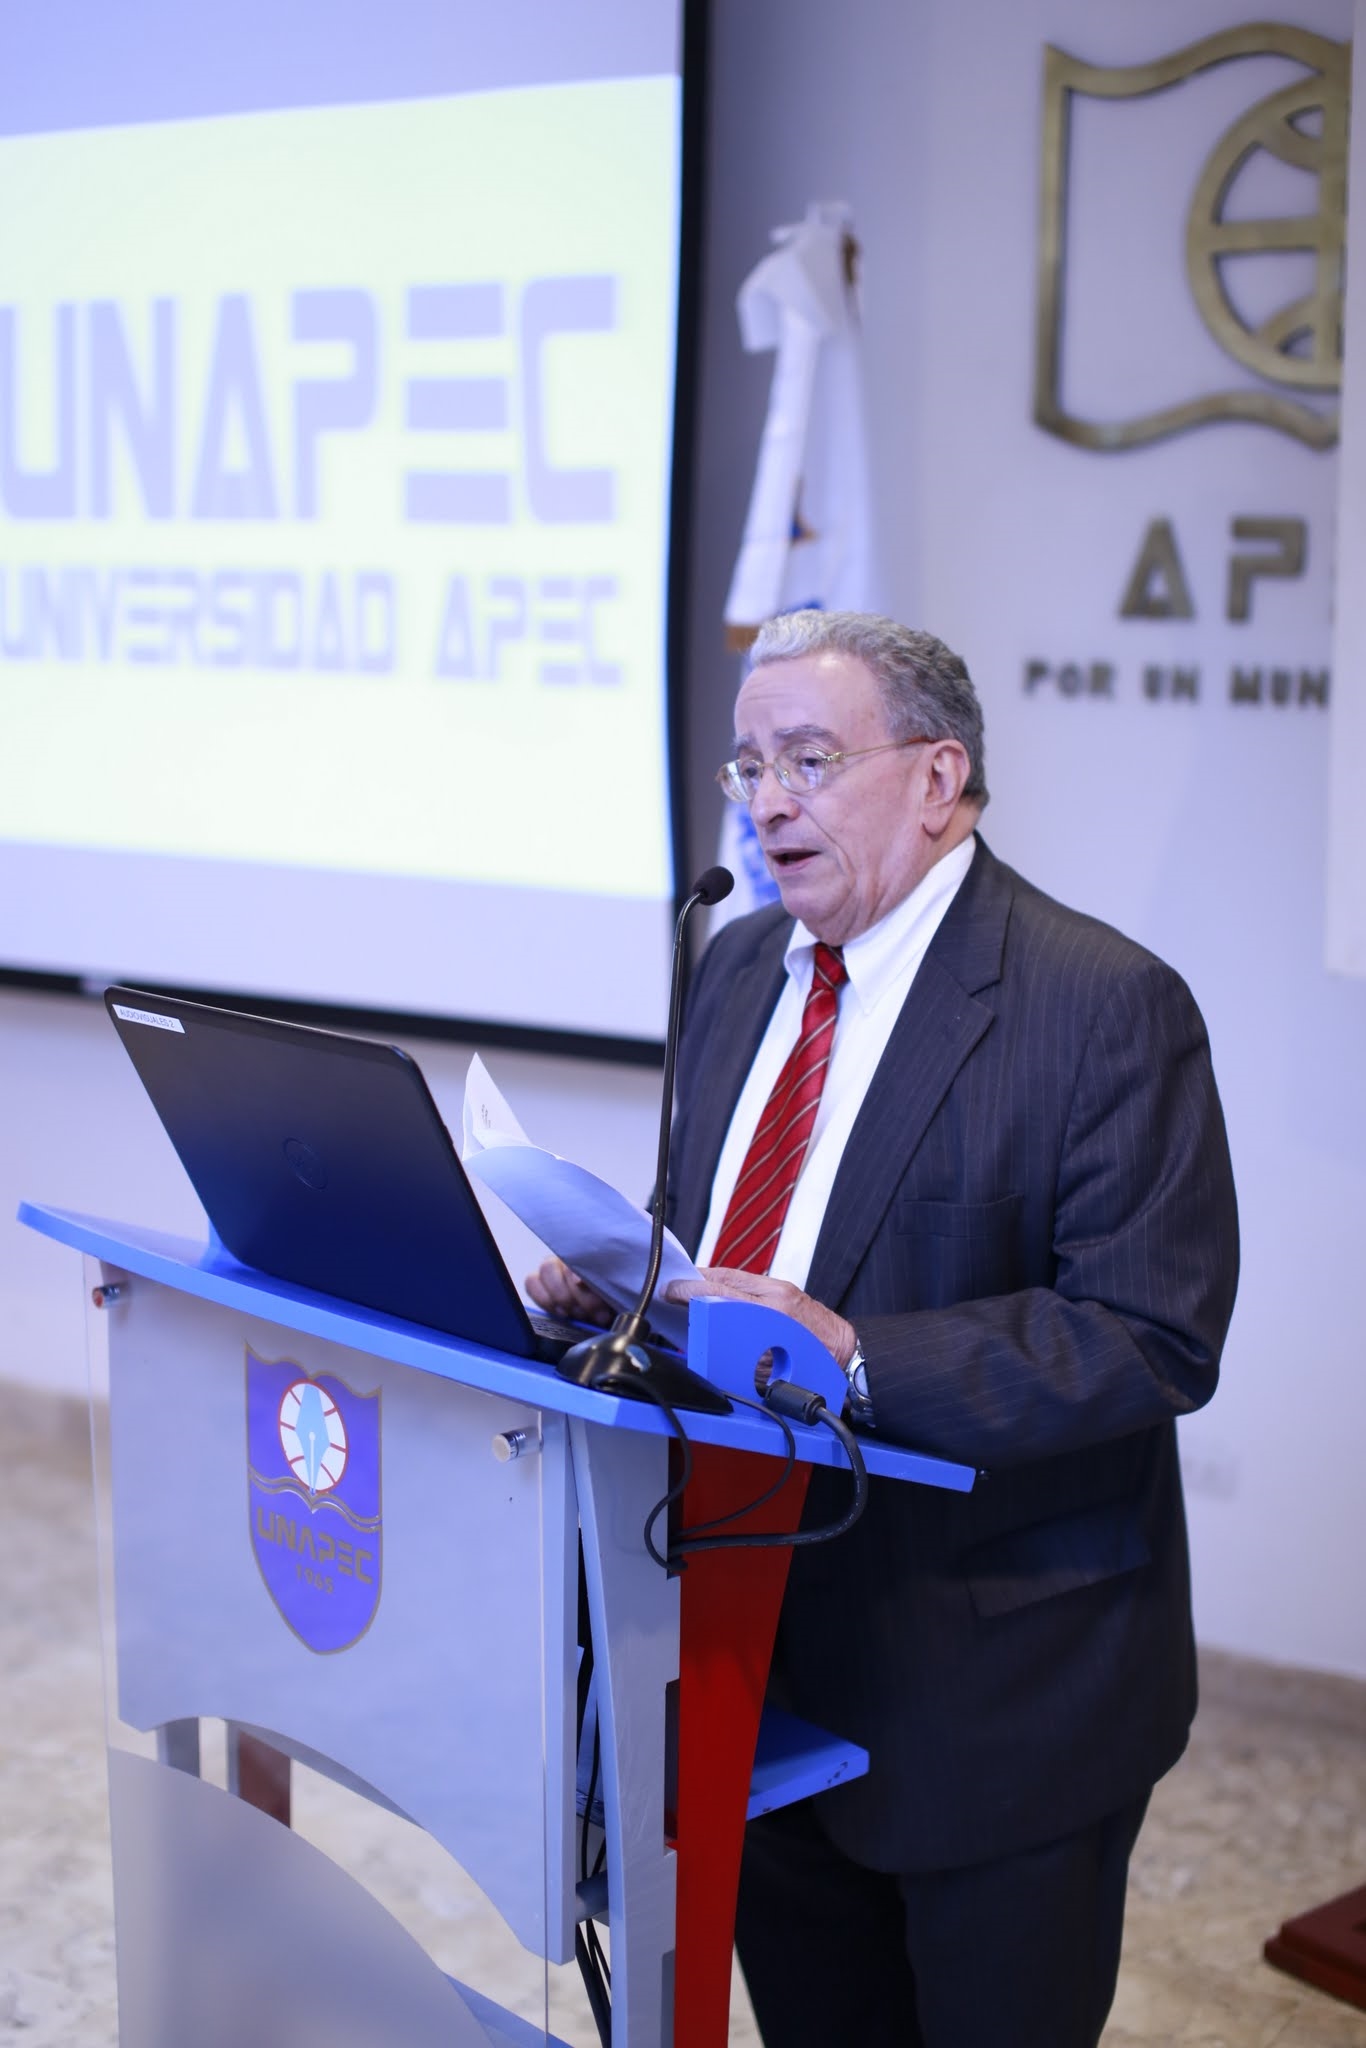 Dr. Radhamés Mejía, rector de UNAPEC